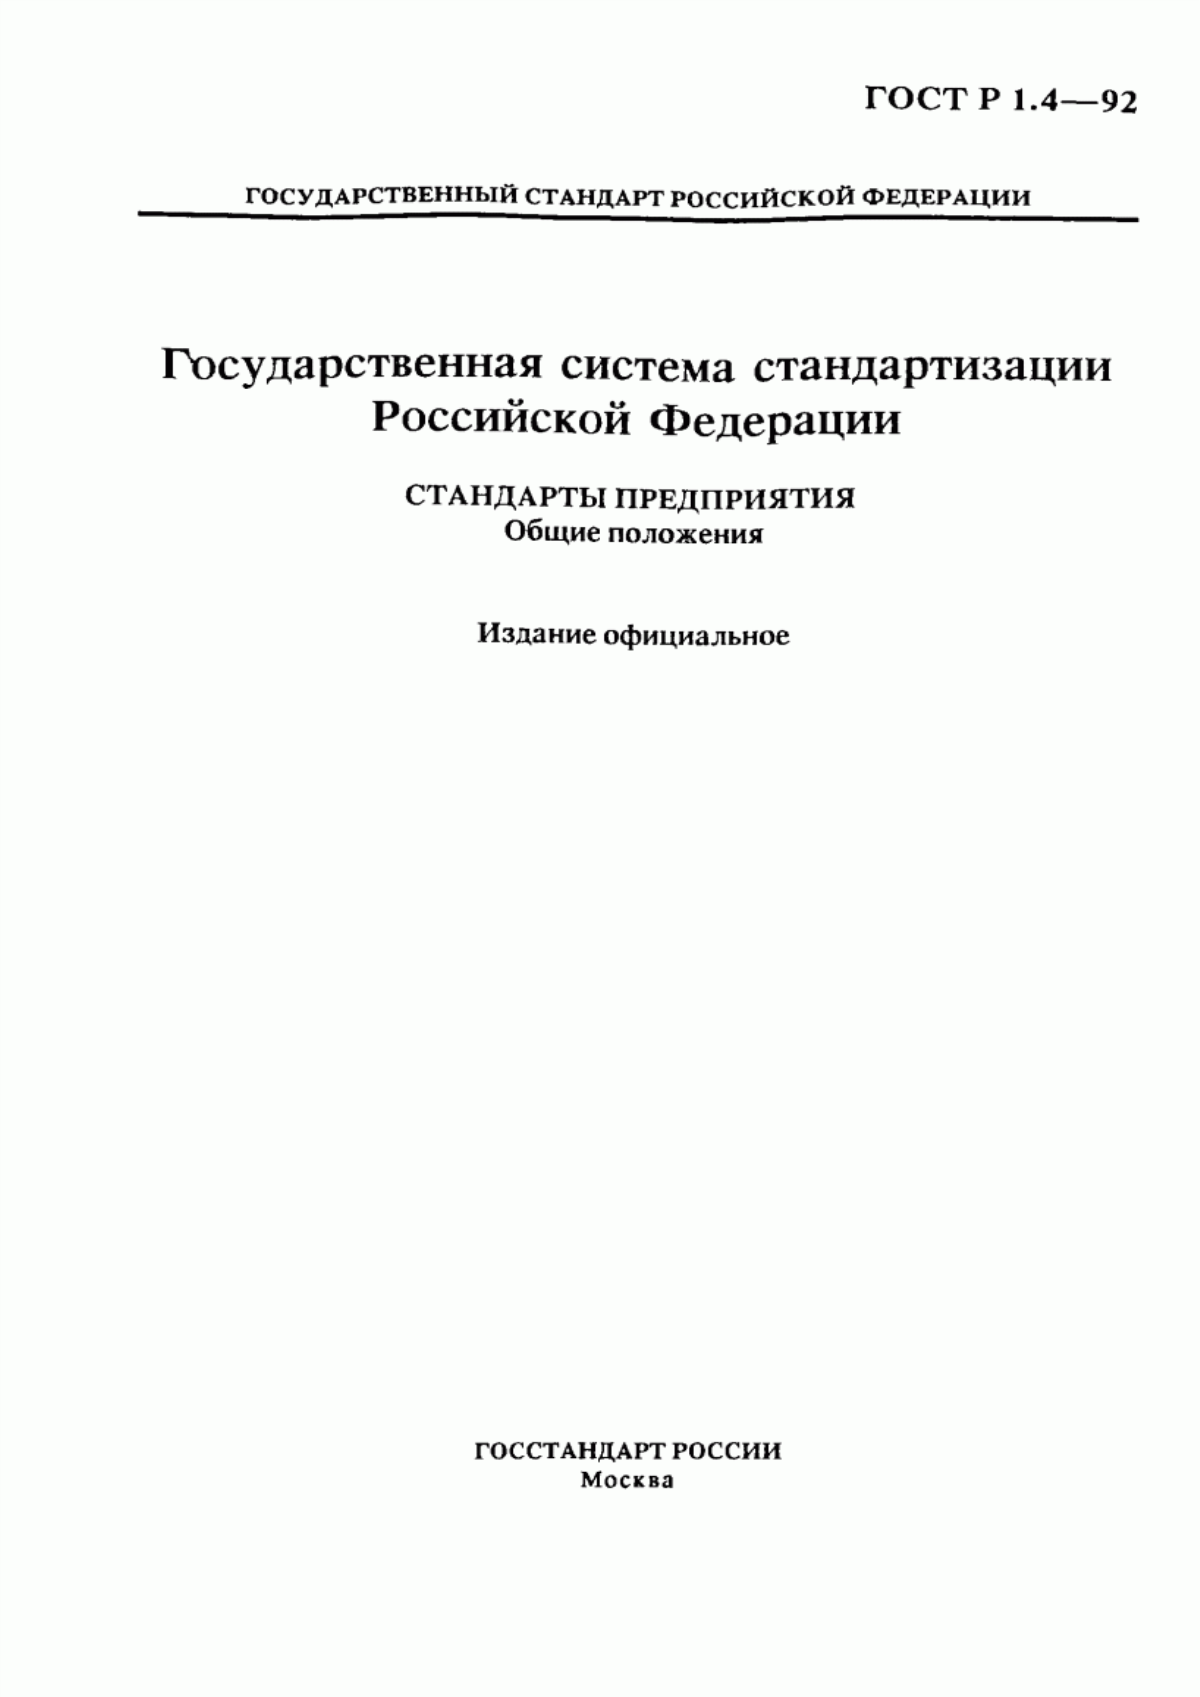 ГОСТ Р 1.4-92 Государственная система стандартизации Российской Федерации. Стандарты предприятия. Общие положения